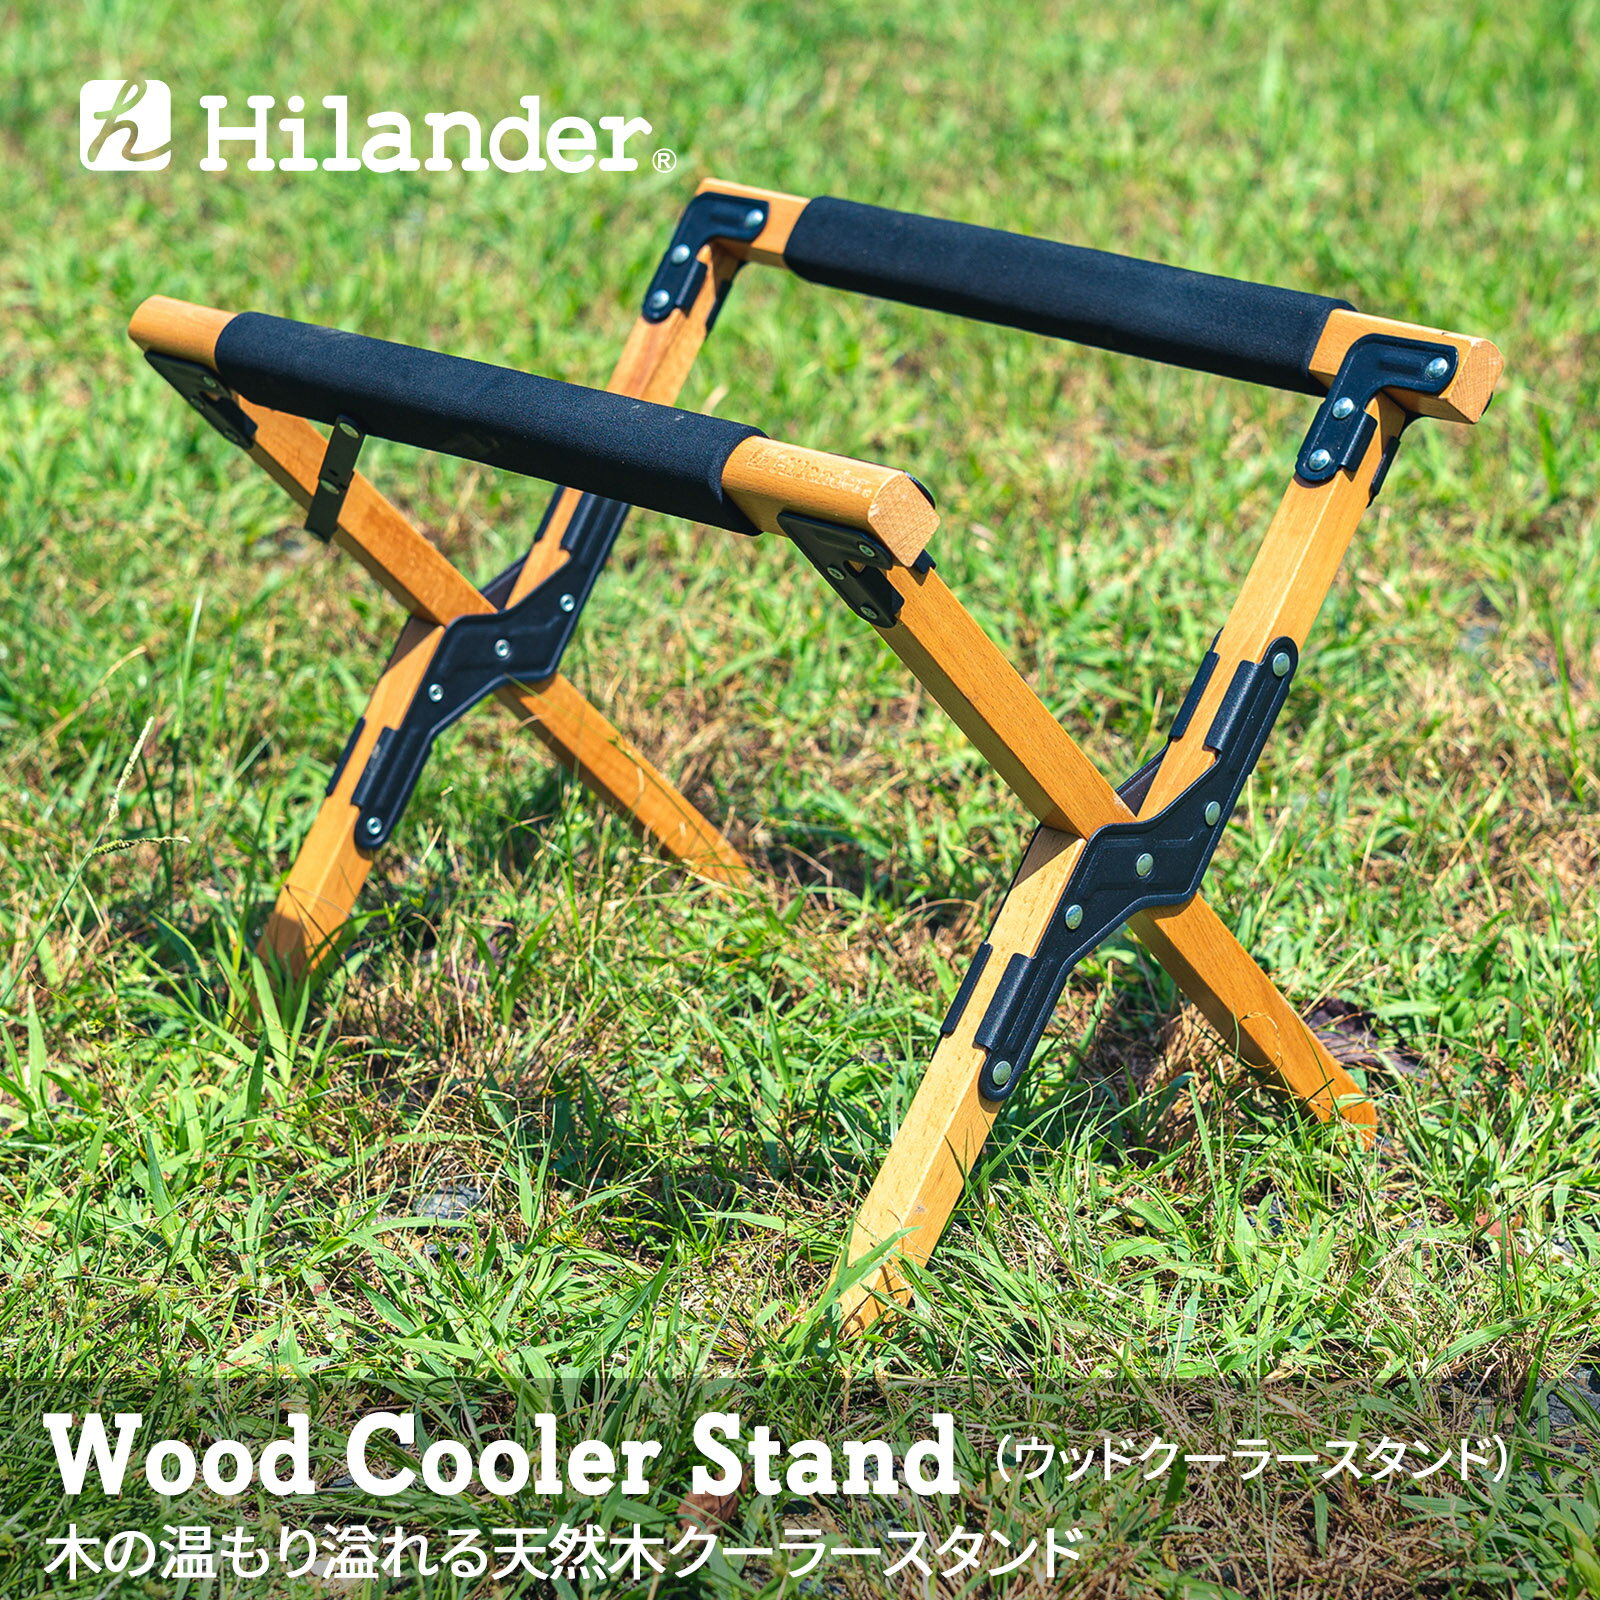 Hilander(ハイランダー) ウッドクーラースタンド 【1年保証】 ナチュラル HCA0179